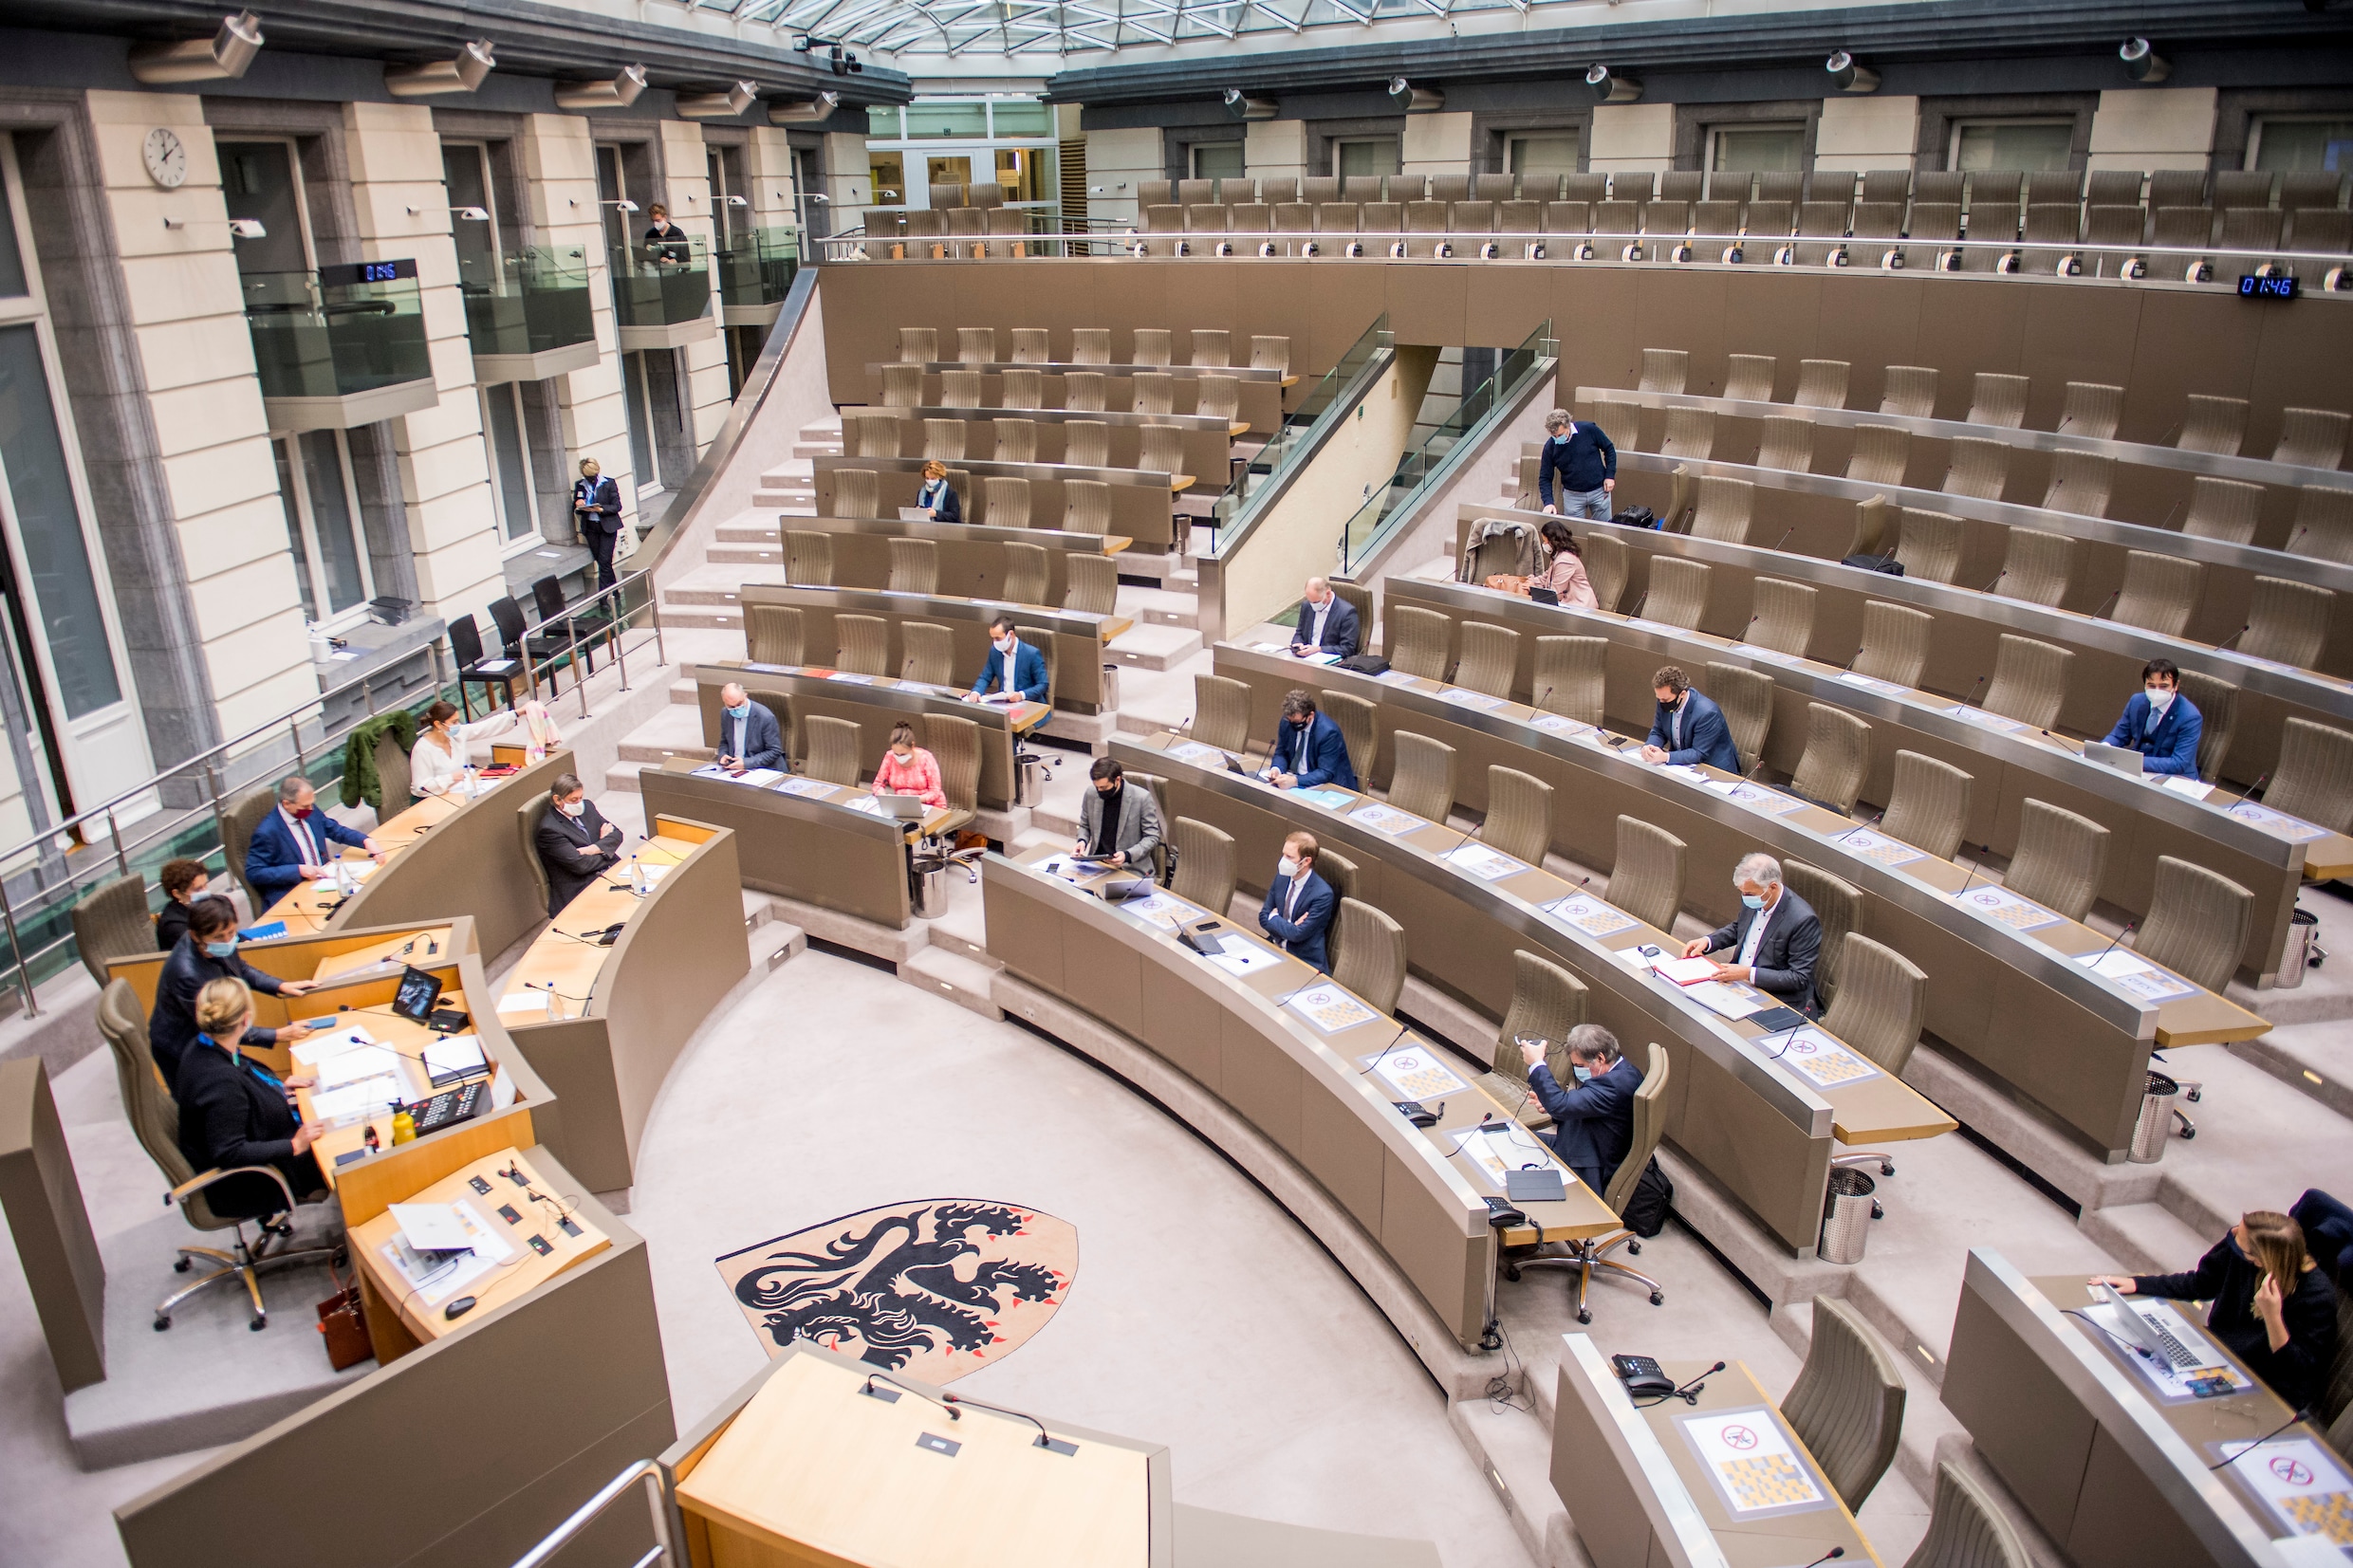 Zwijgakkoord legt Vlaams Parlement aan banden, tot ongenoegen van sommigen: ‘Veel macht uit handen gegeven aan regering’